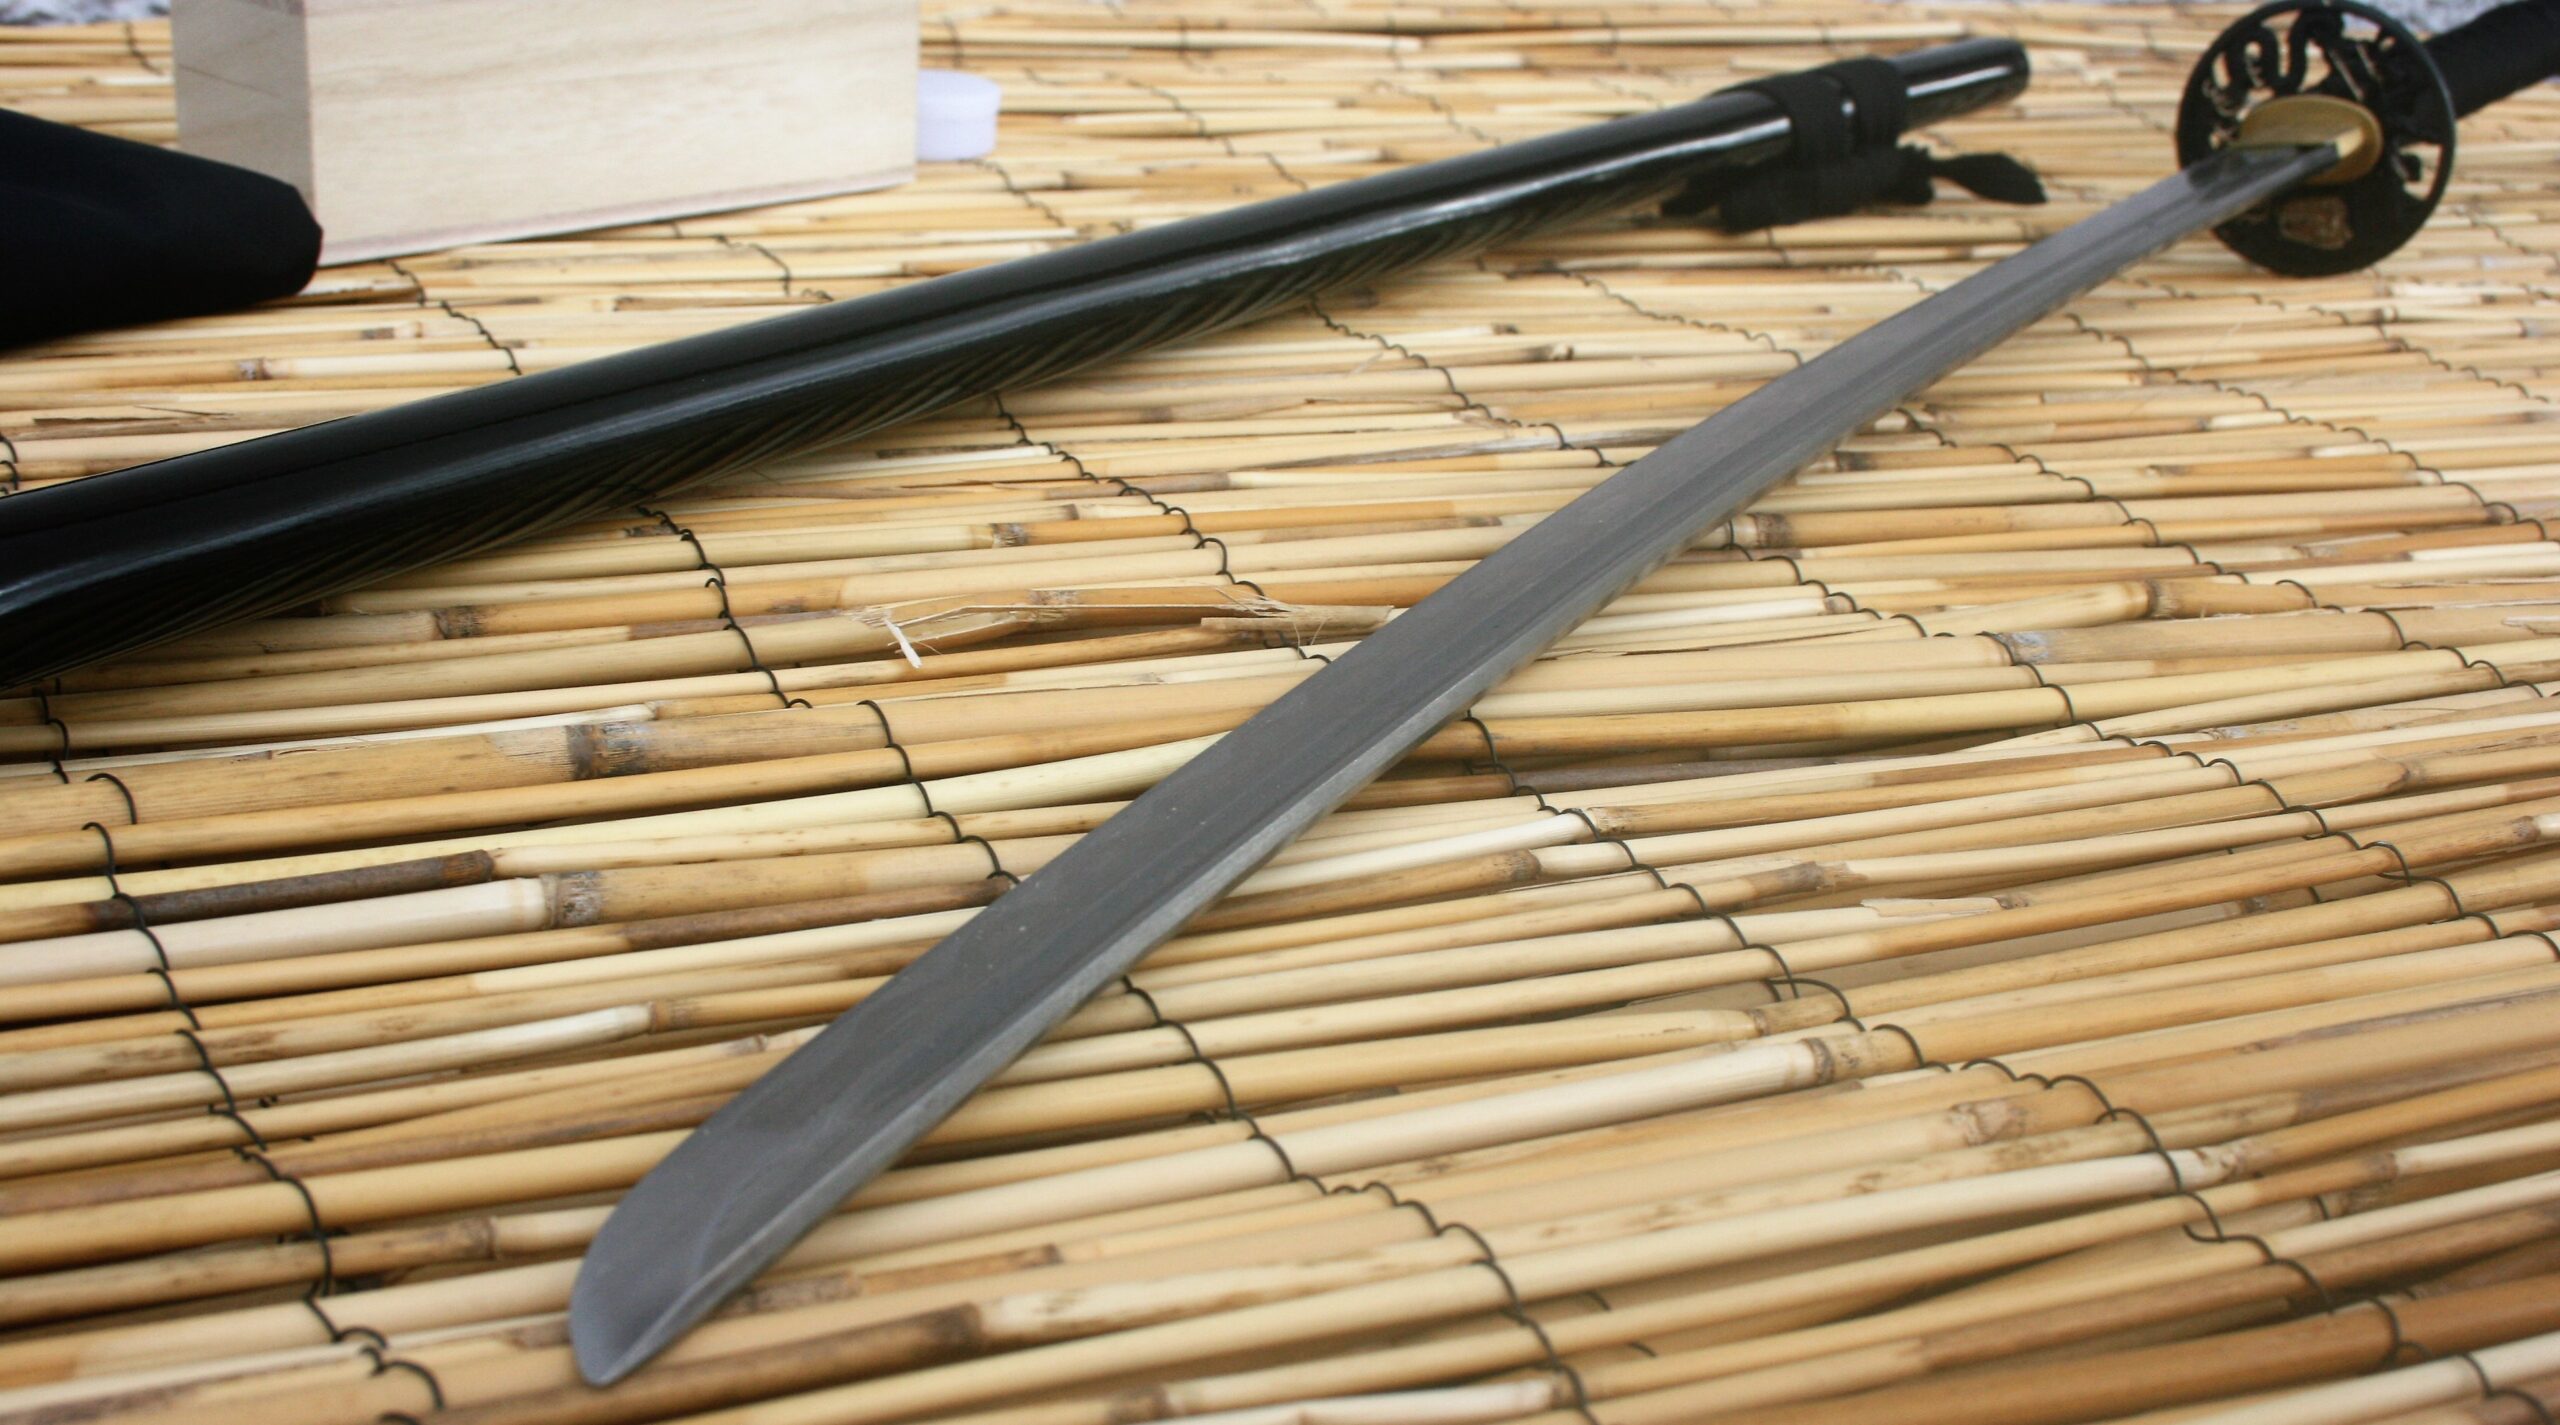 Musashi Tenryu Katana – Musashi Swords